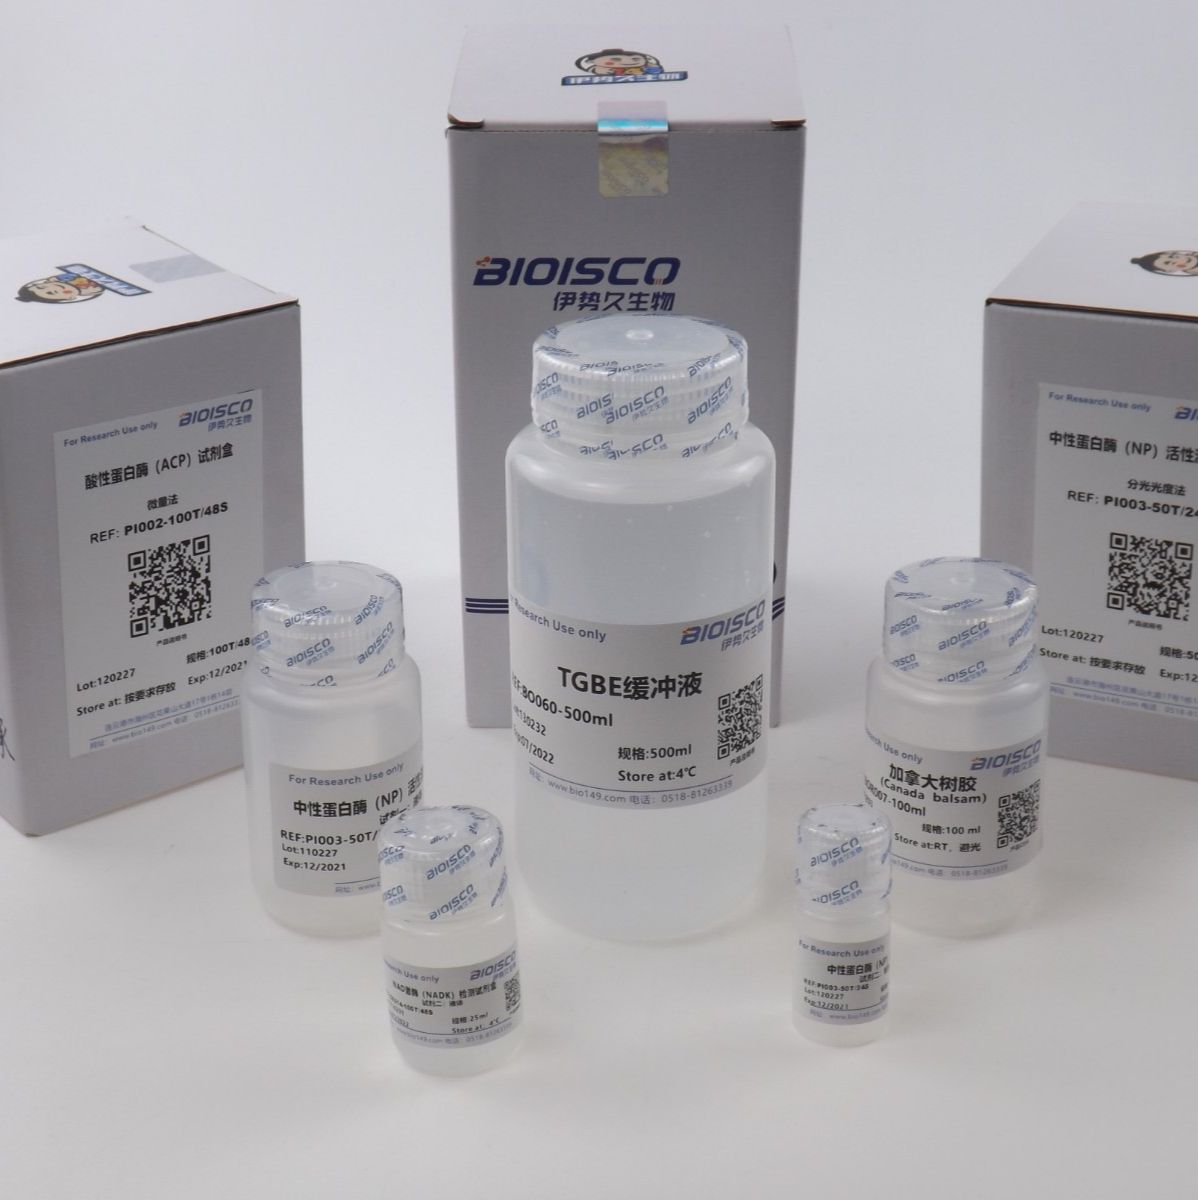 生化试剂标准物质 标准蛋白质溶液(BSA,10mg/ml) 本生